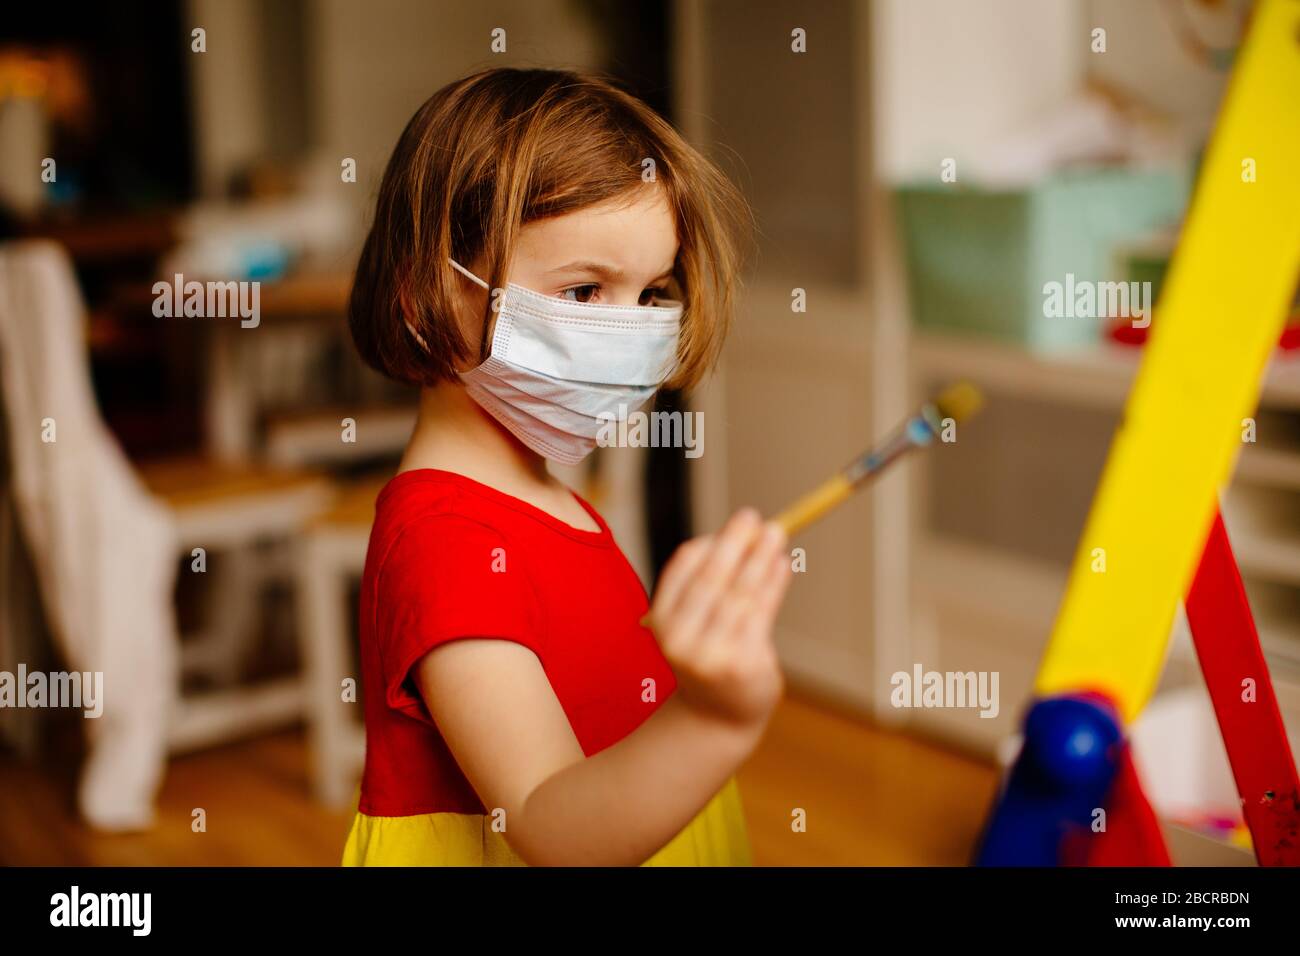 Portrait d'un petit enfant préscolaire avec protection antivirus masque chirurgical du visage en raison du coronavirus, peinture à un chevalet d'art à la maison Banque D'Images